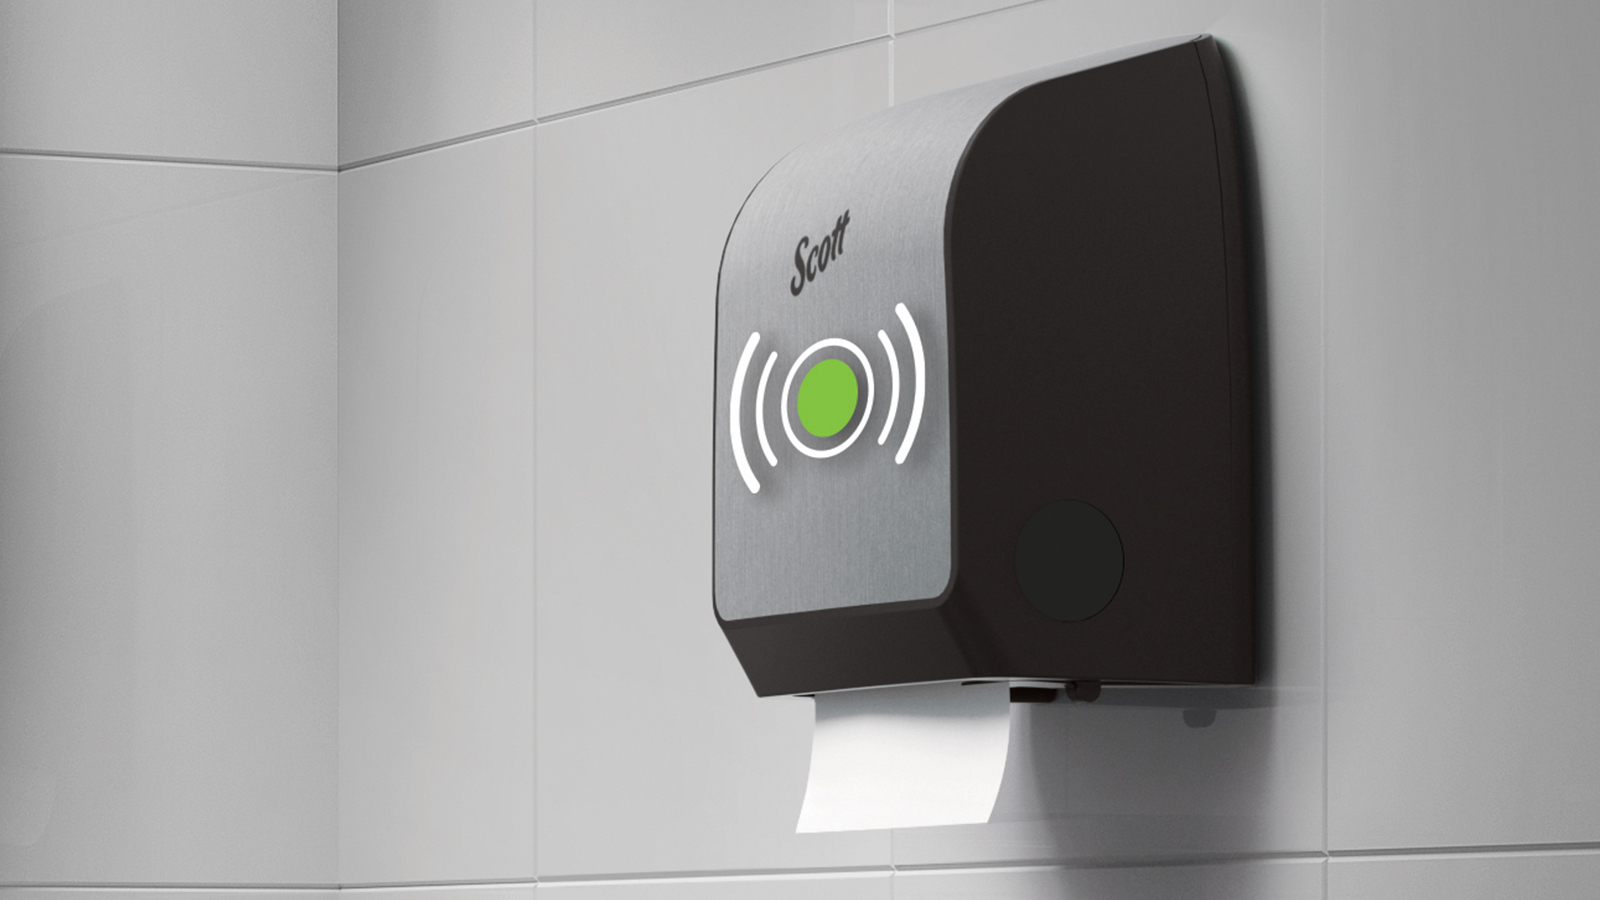 Scott® smart restroom touchless hand towel dispenser